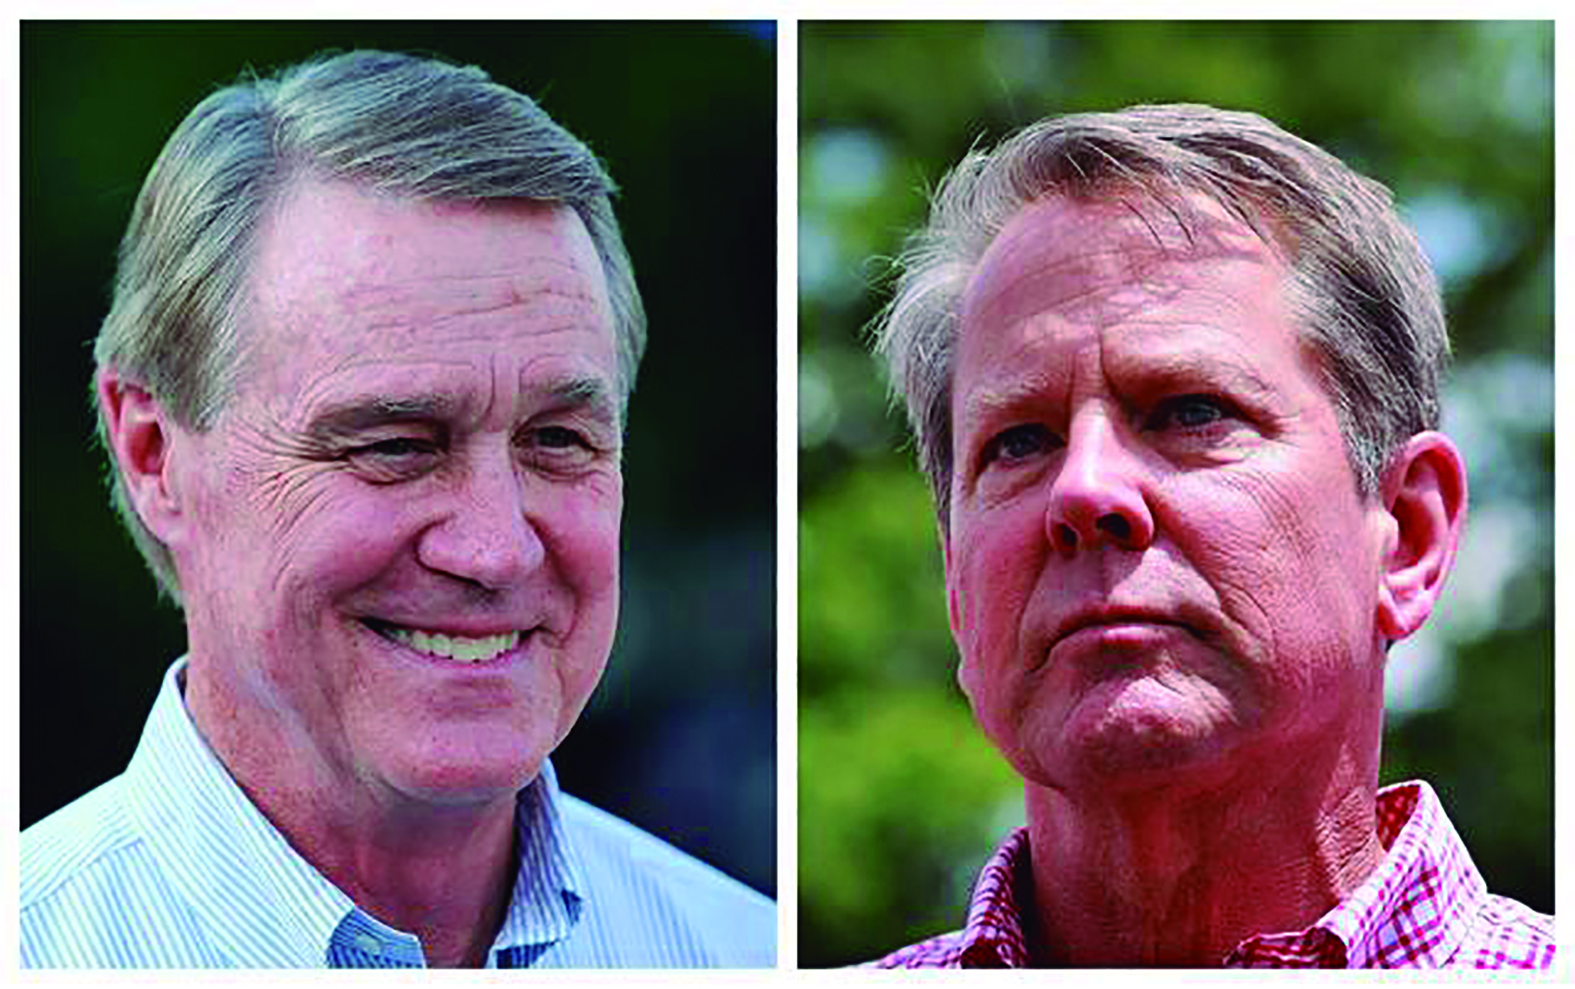 De izquierda a derecha el derrotado candidato de Trump David Perdue y el gobernador Brian Kemp.